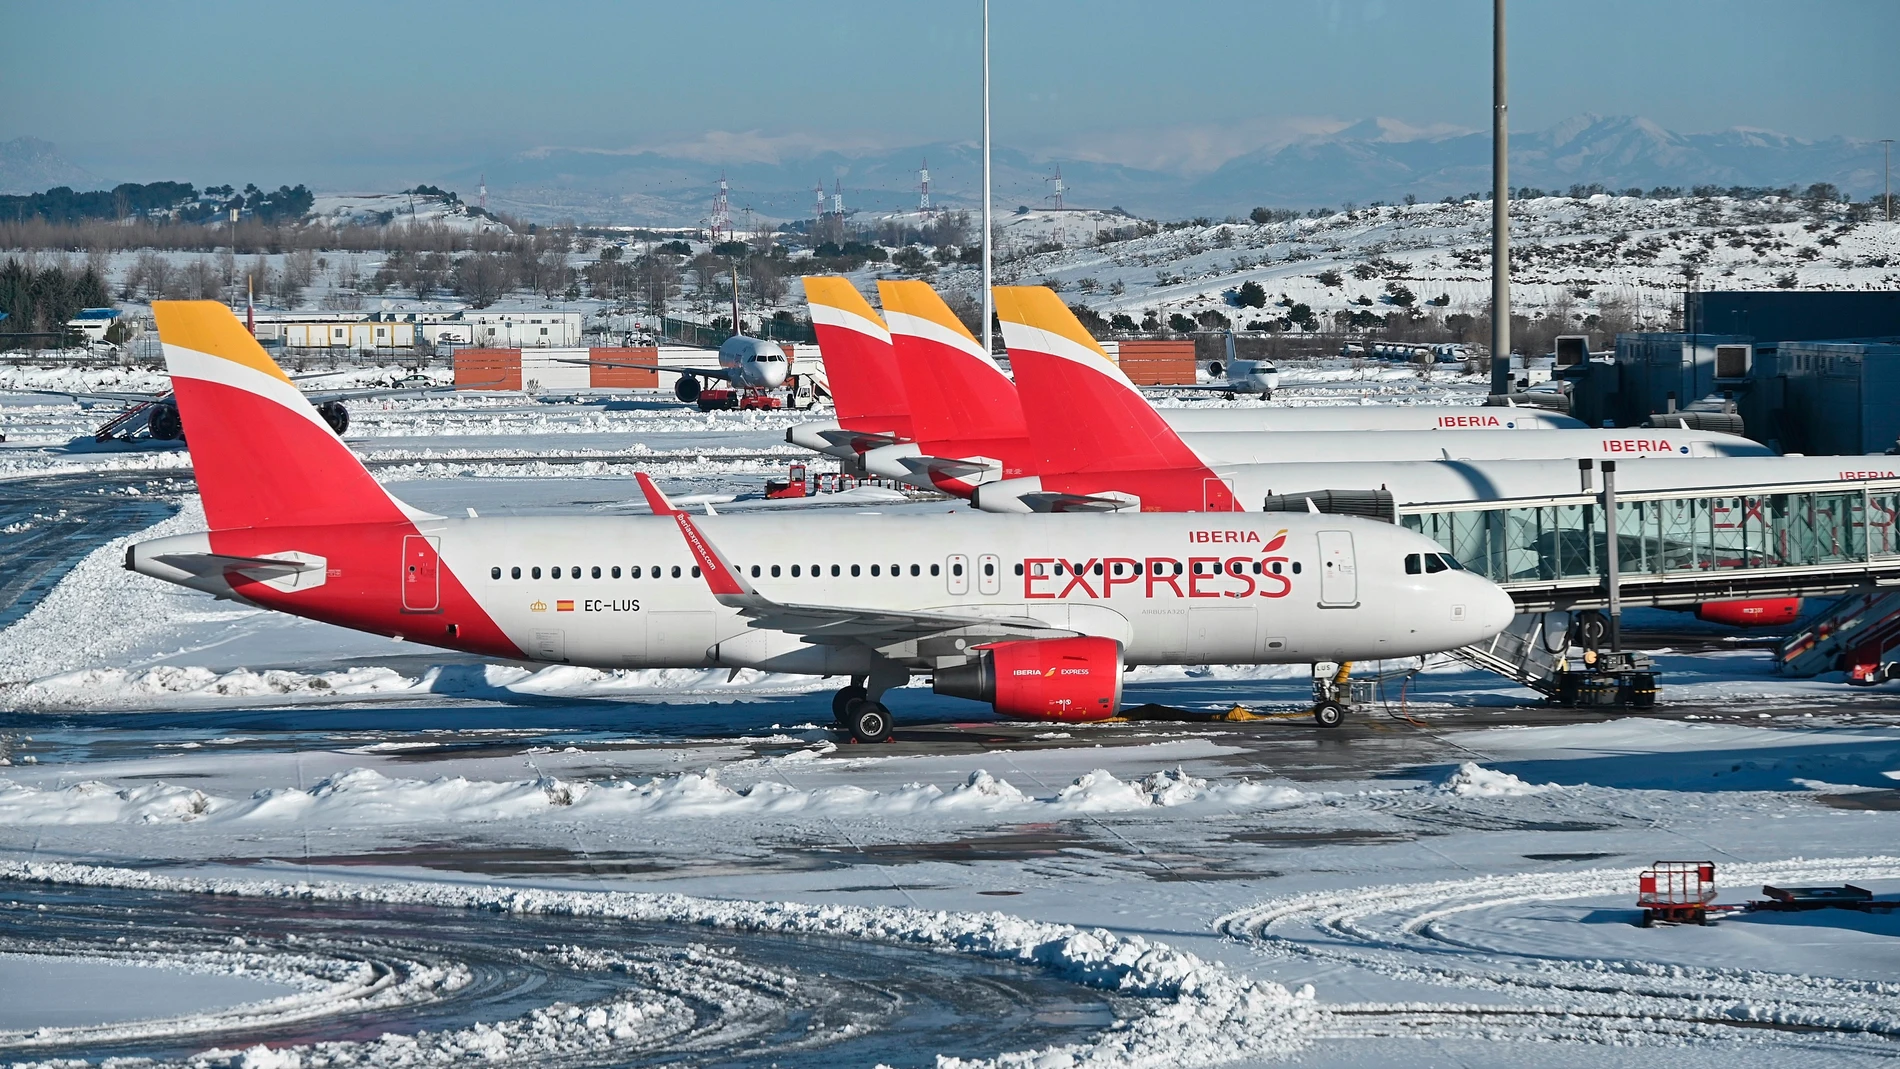 Aviones de Iberia Express en el aeropuerto de Barajas